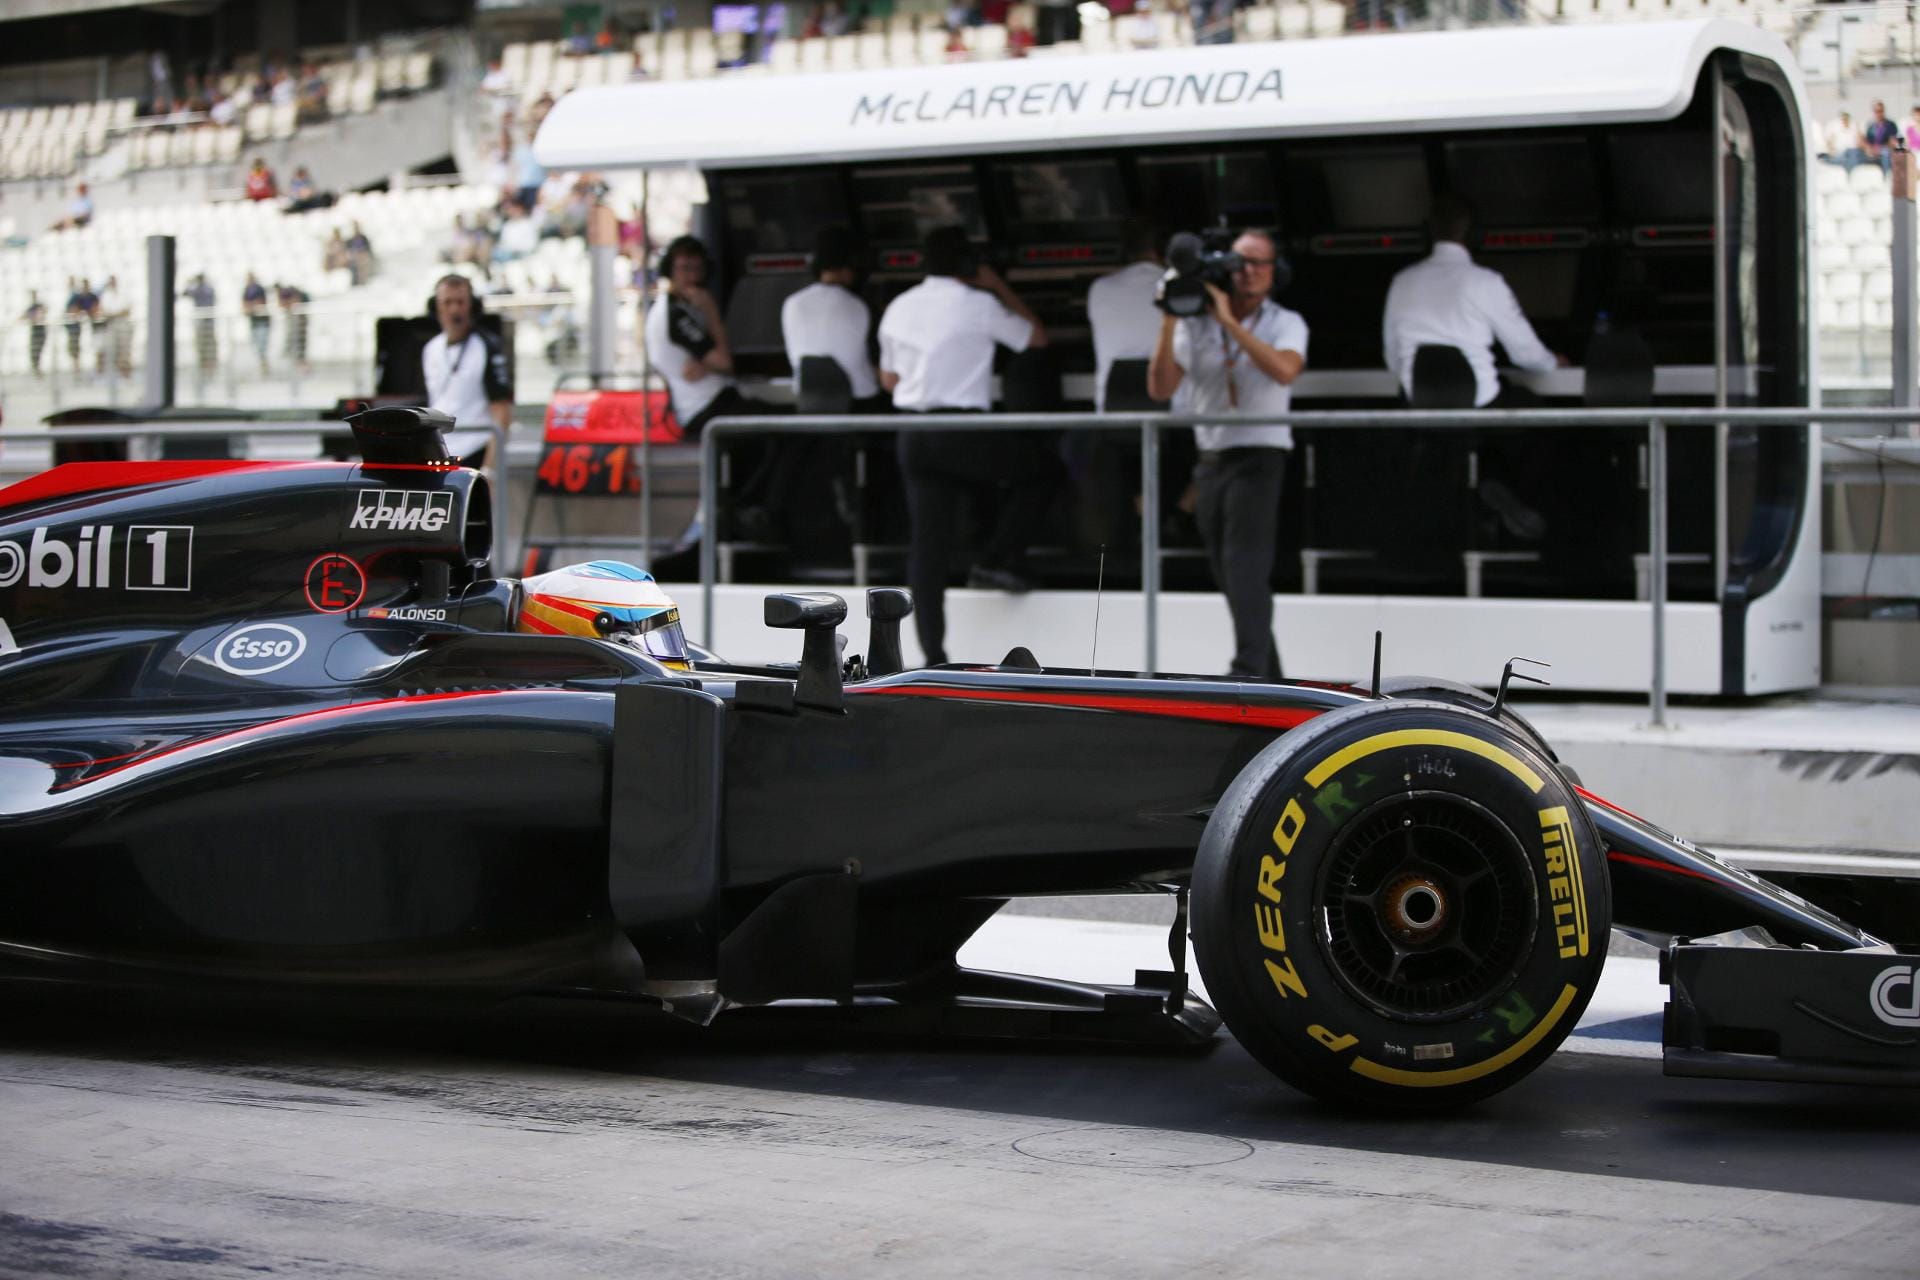 Ansonsten hat Alonso nicht viel zu lachen - wie immer fährt der Spanier hinterher.